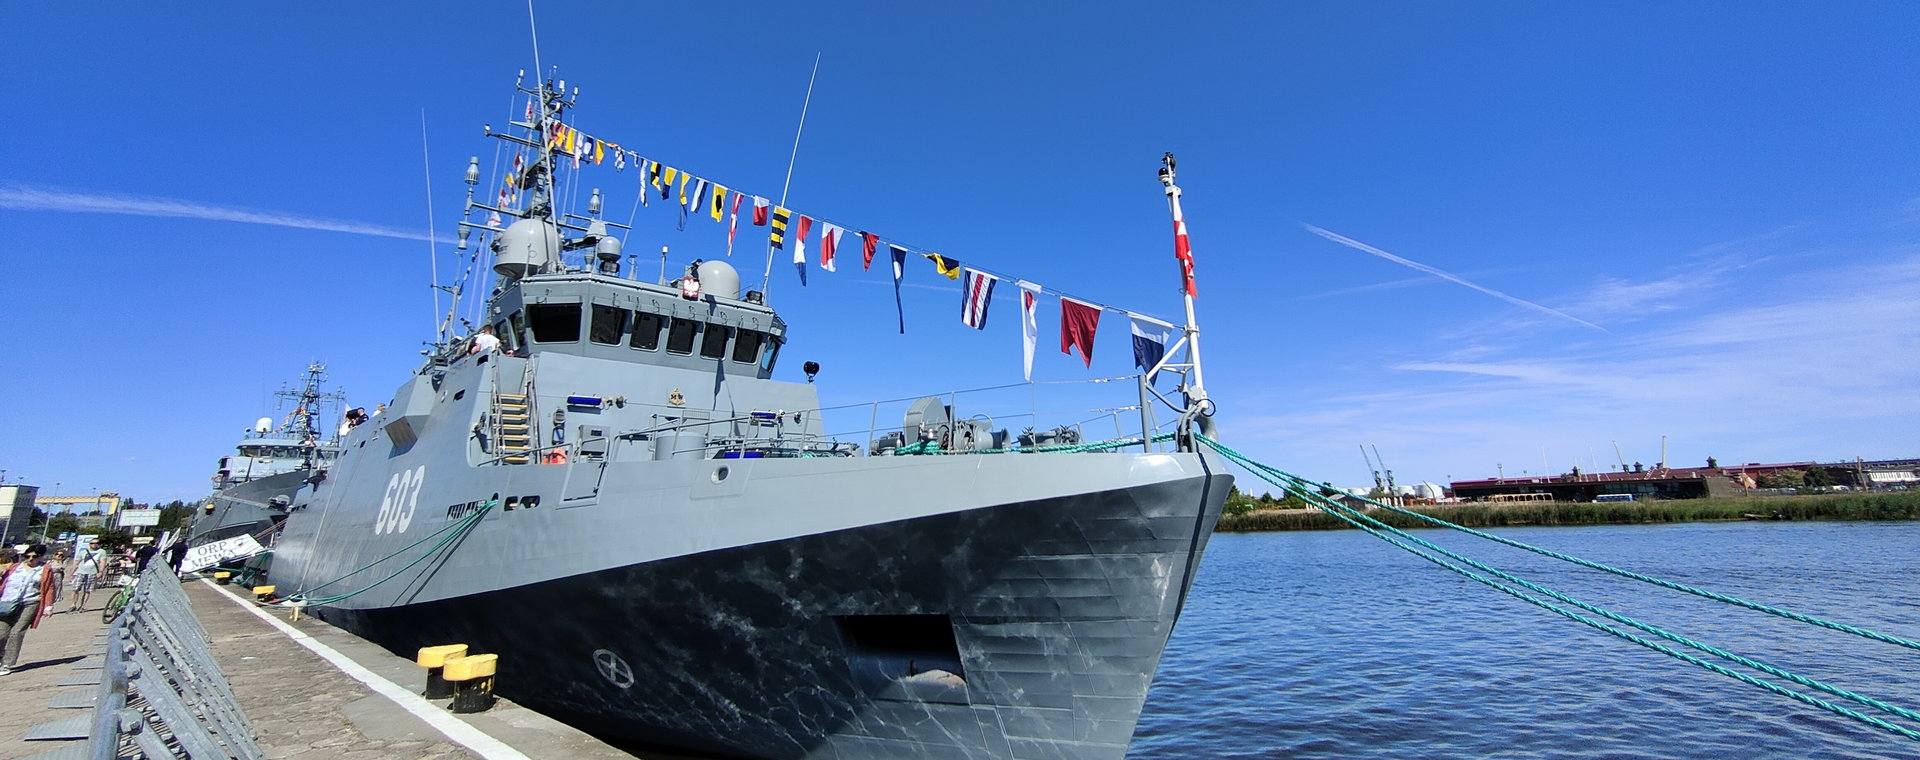 ORP Mewa to obecnie najnowocześniejszy okręt, który pływa pod polską banderą.